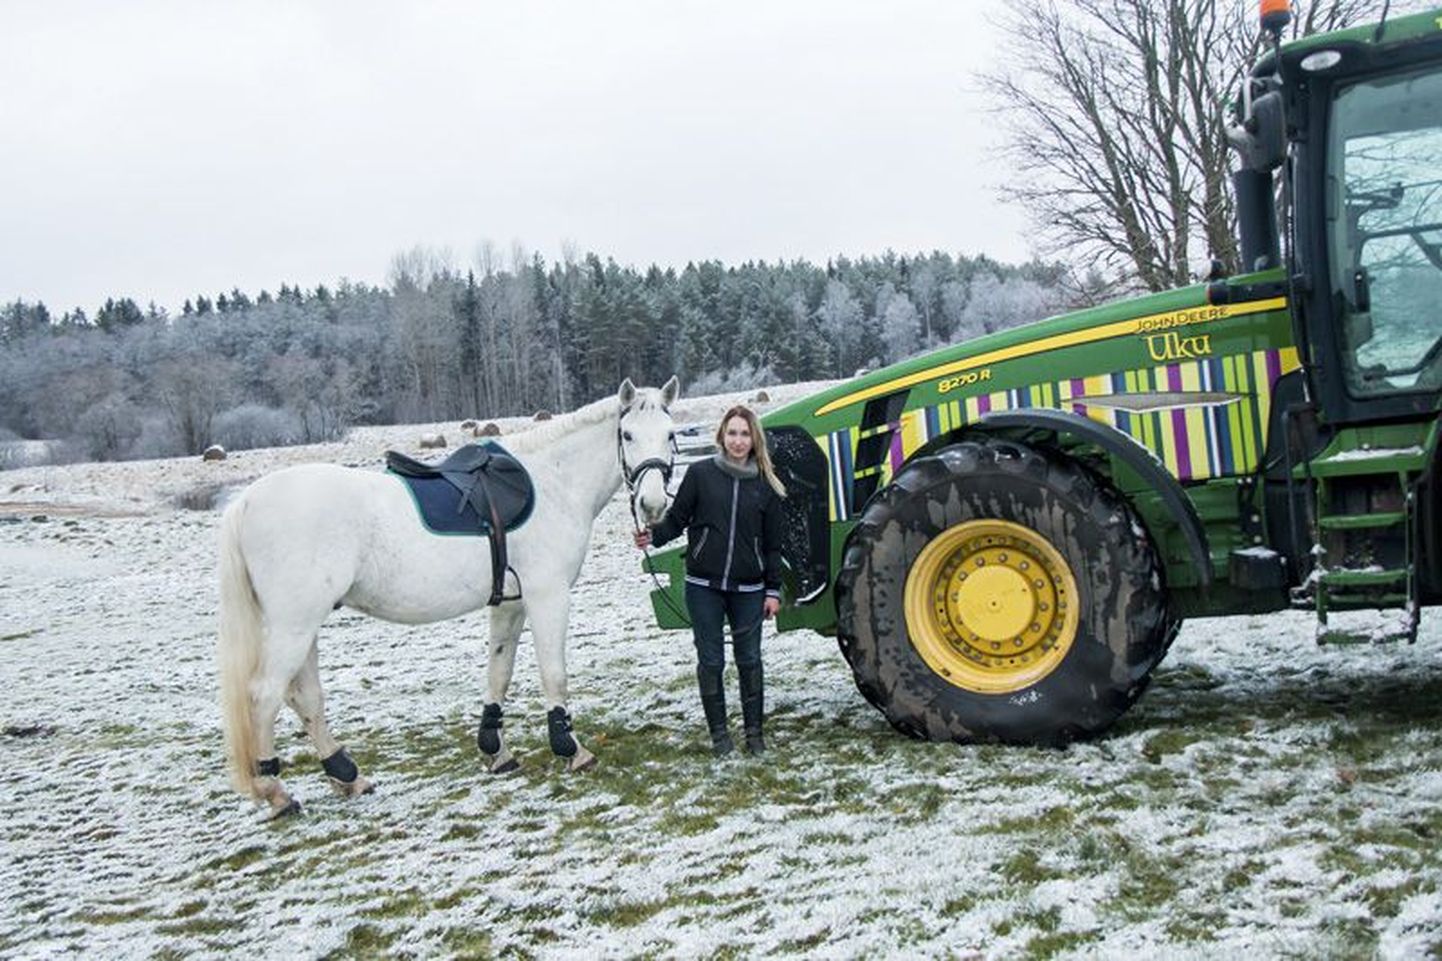 Kristin Tärn ja tema kaks armastust: vasakul Pariisi talli hobune Fakiir, kellega ta ka võistlemas käib ning paremal Tõnuri talu traktor Uku.